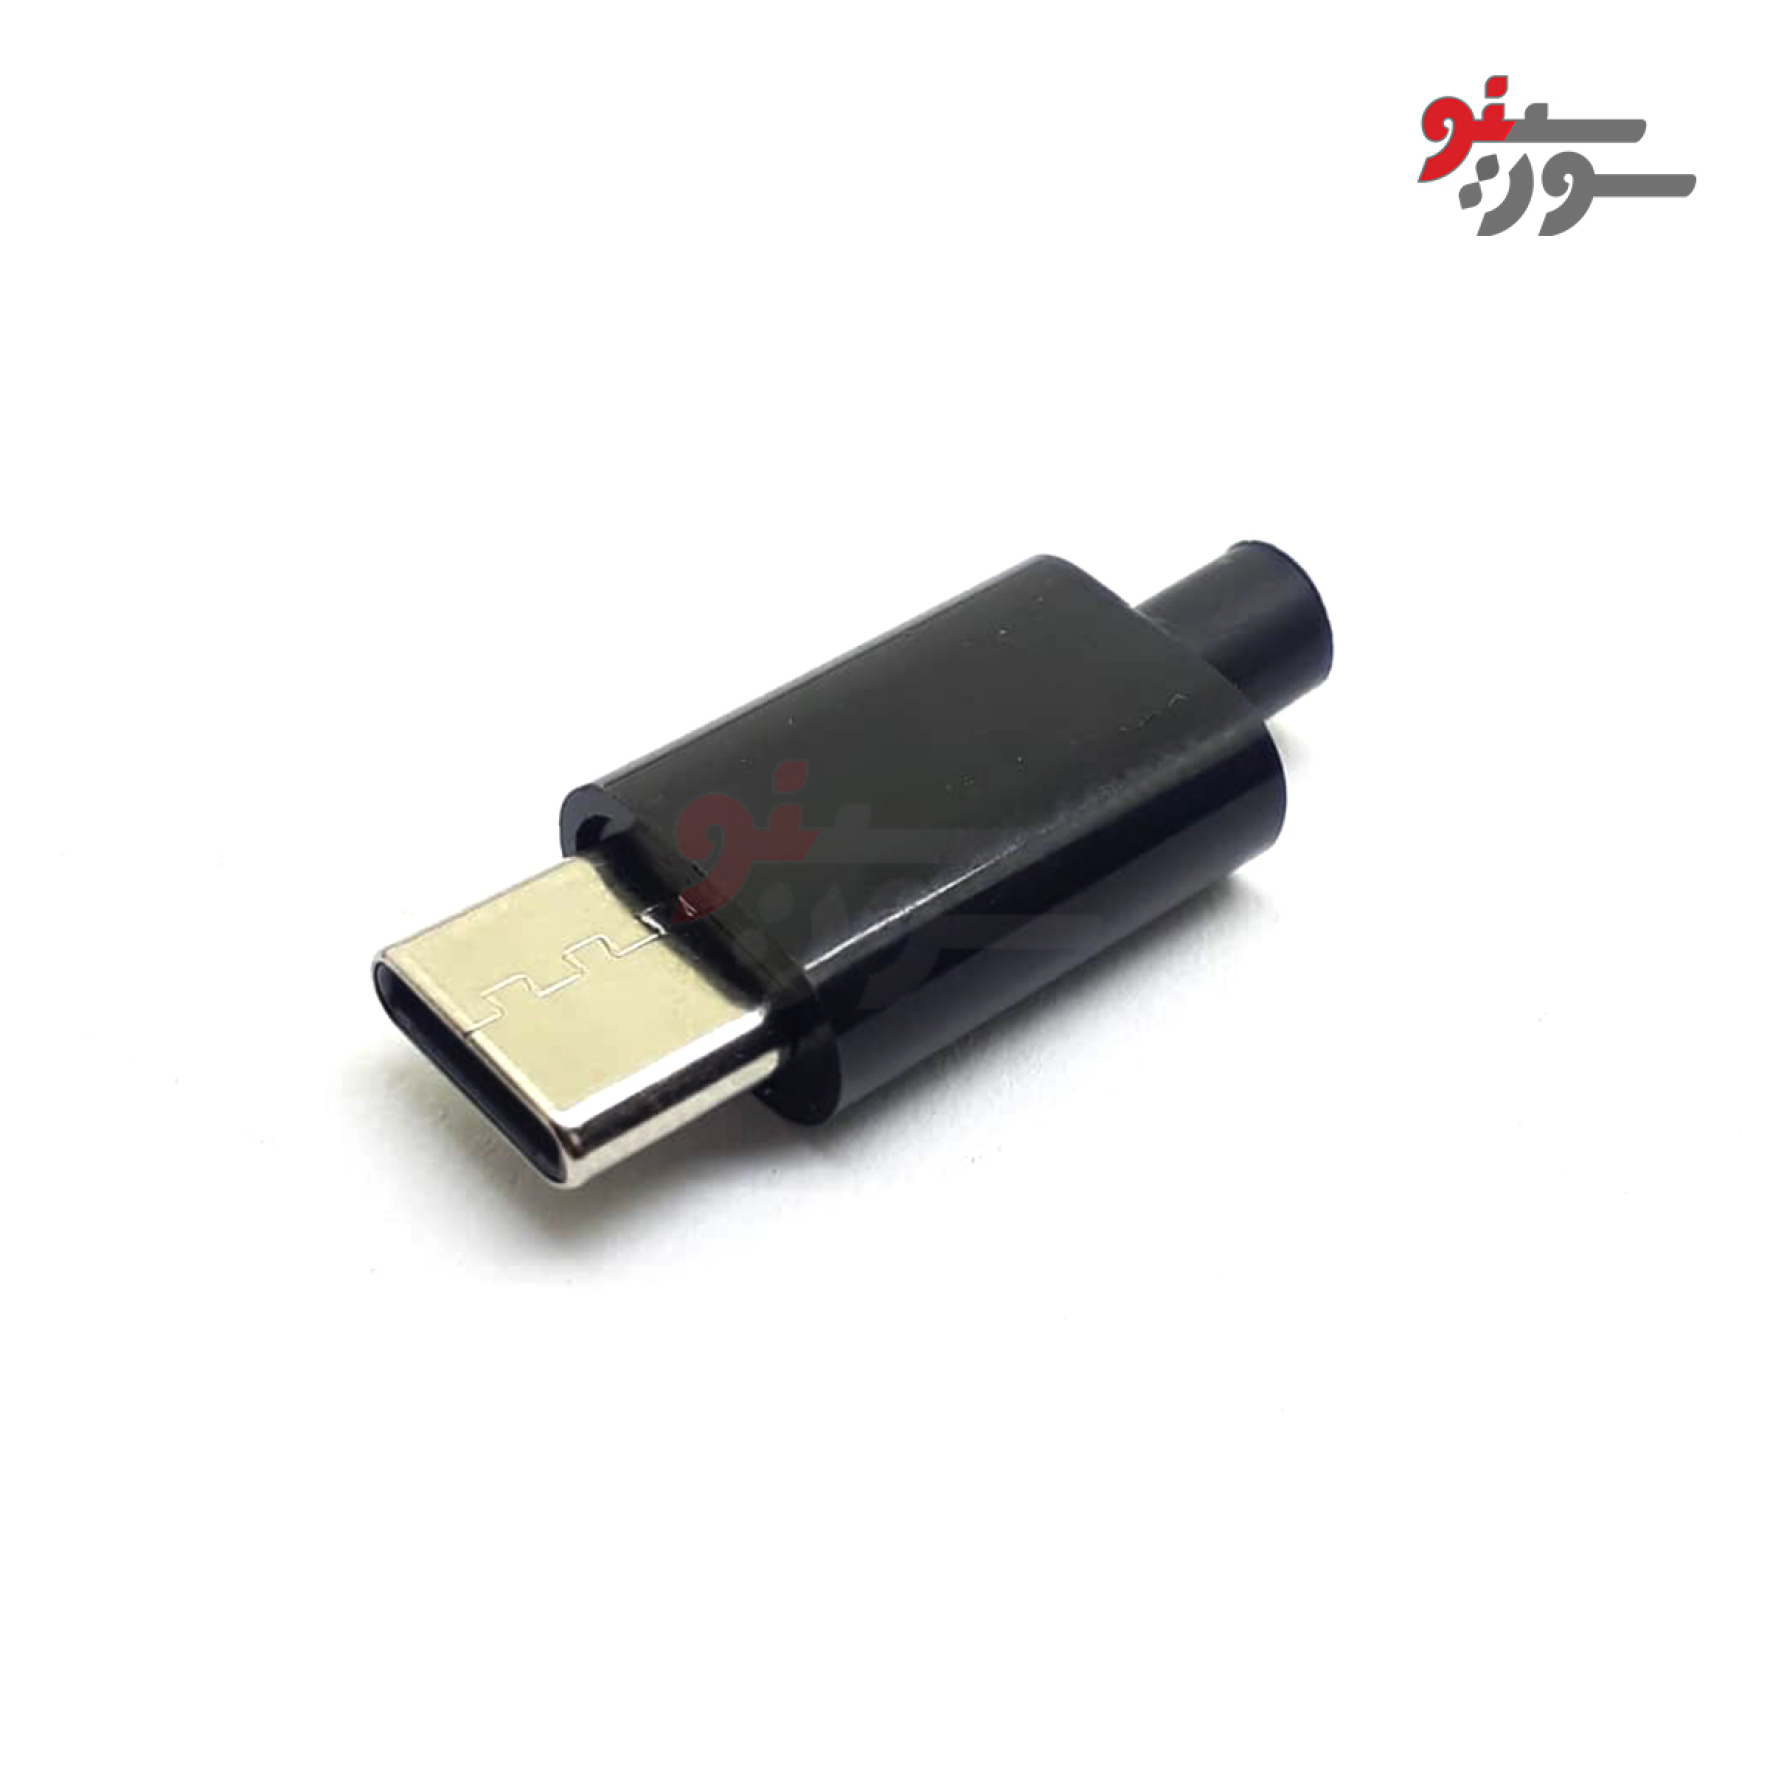 کانکتور Micro USB نری لحیمی کاوردار Type C